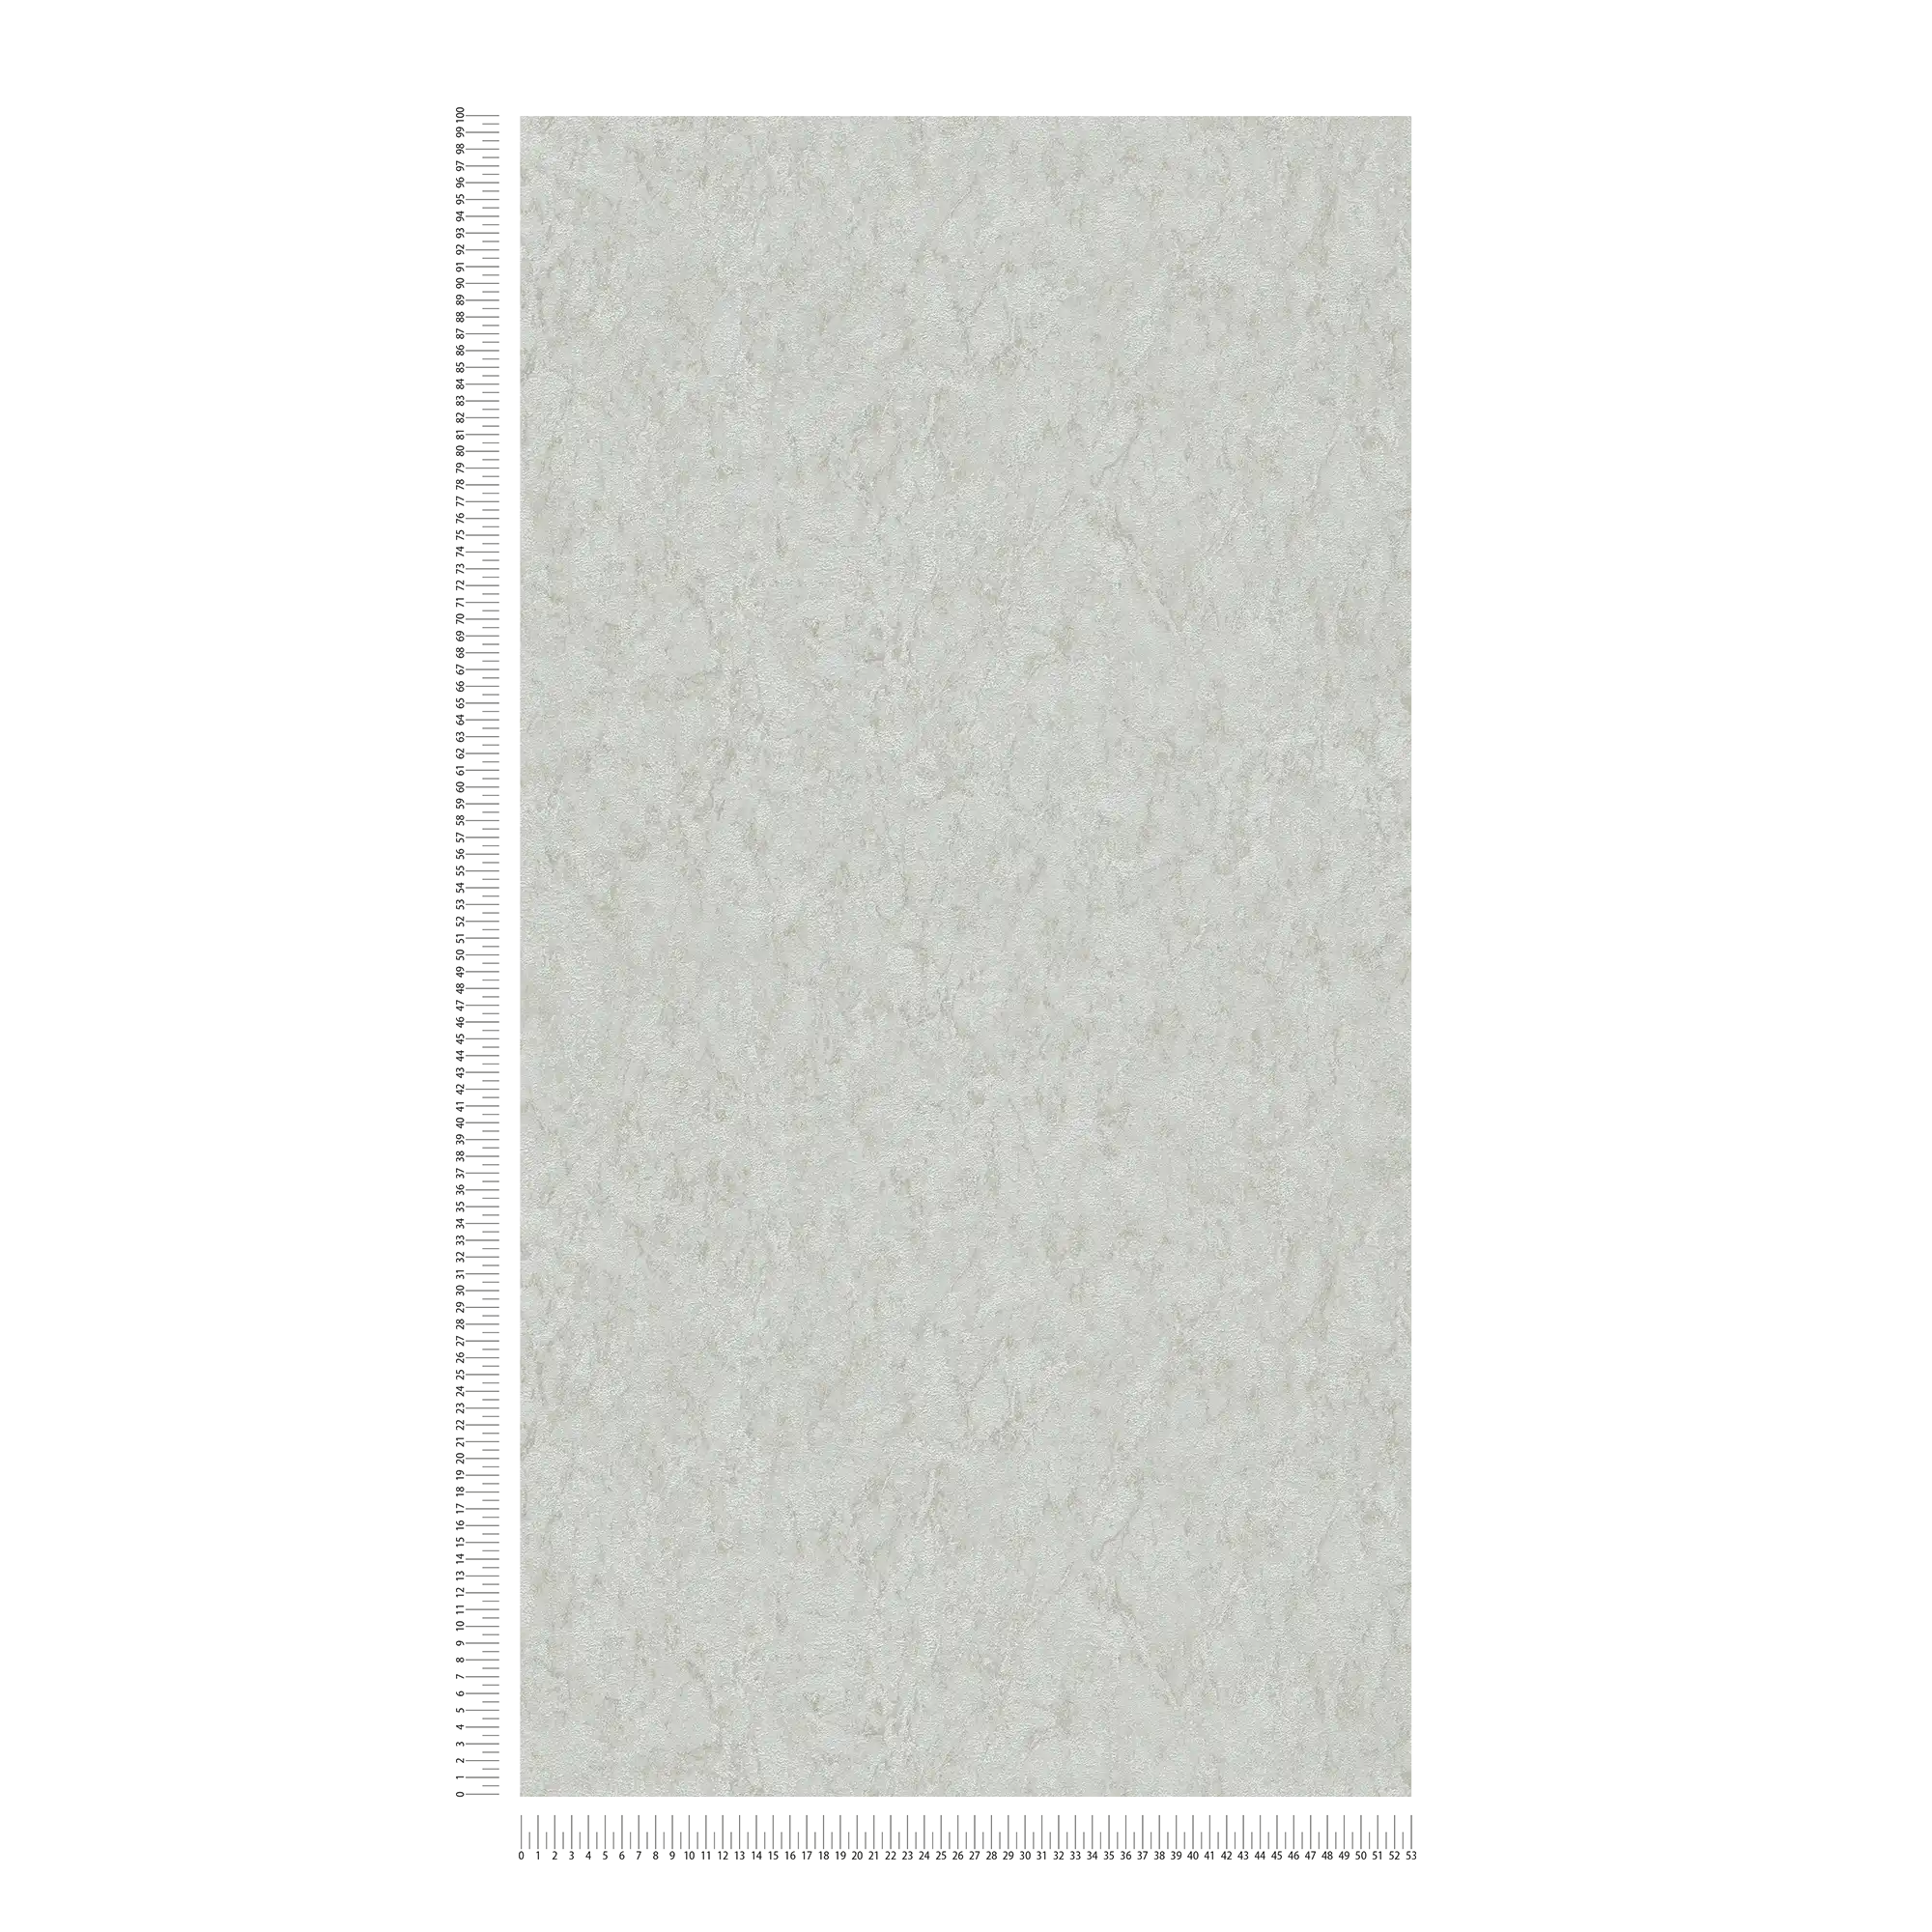             Carta da parati unitaria con effetto texture e disegno screziato - grigio, beige
        